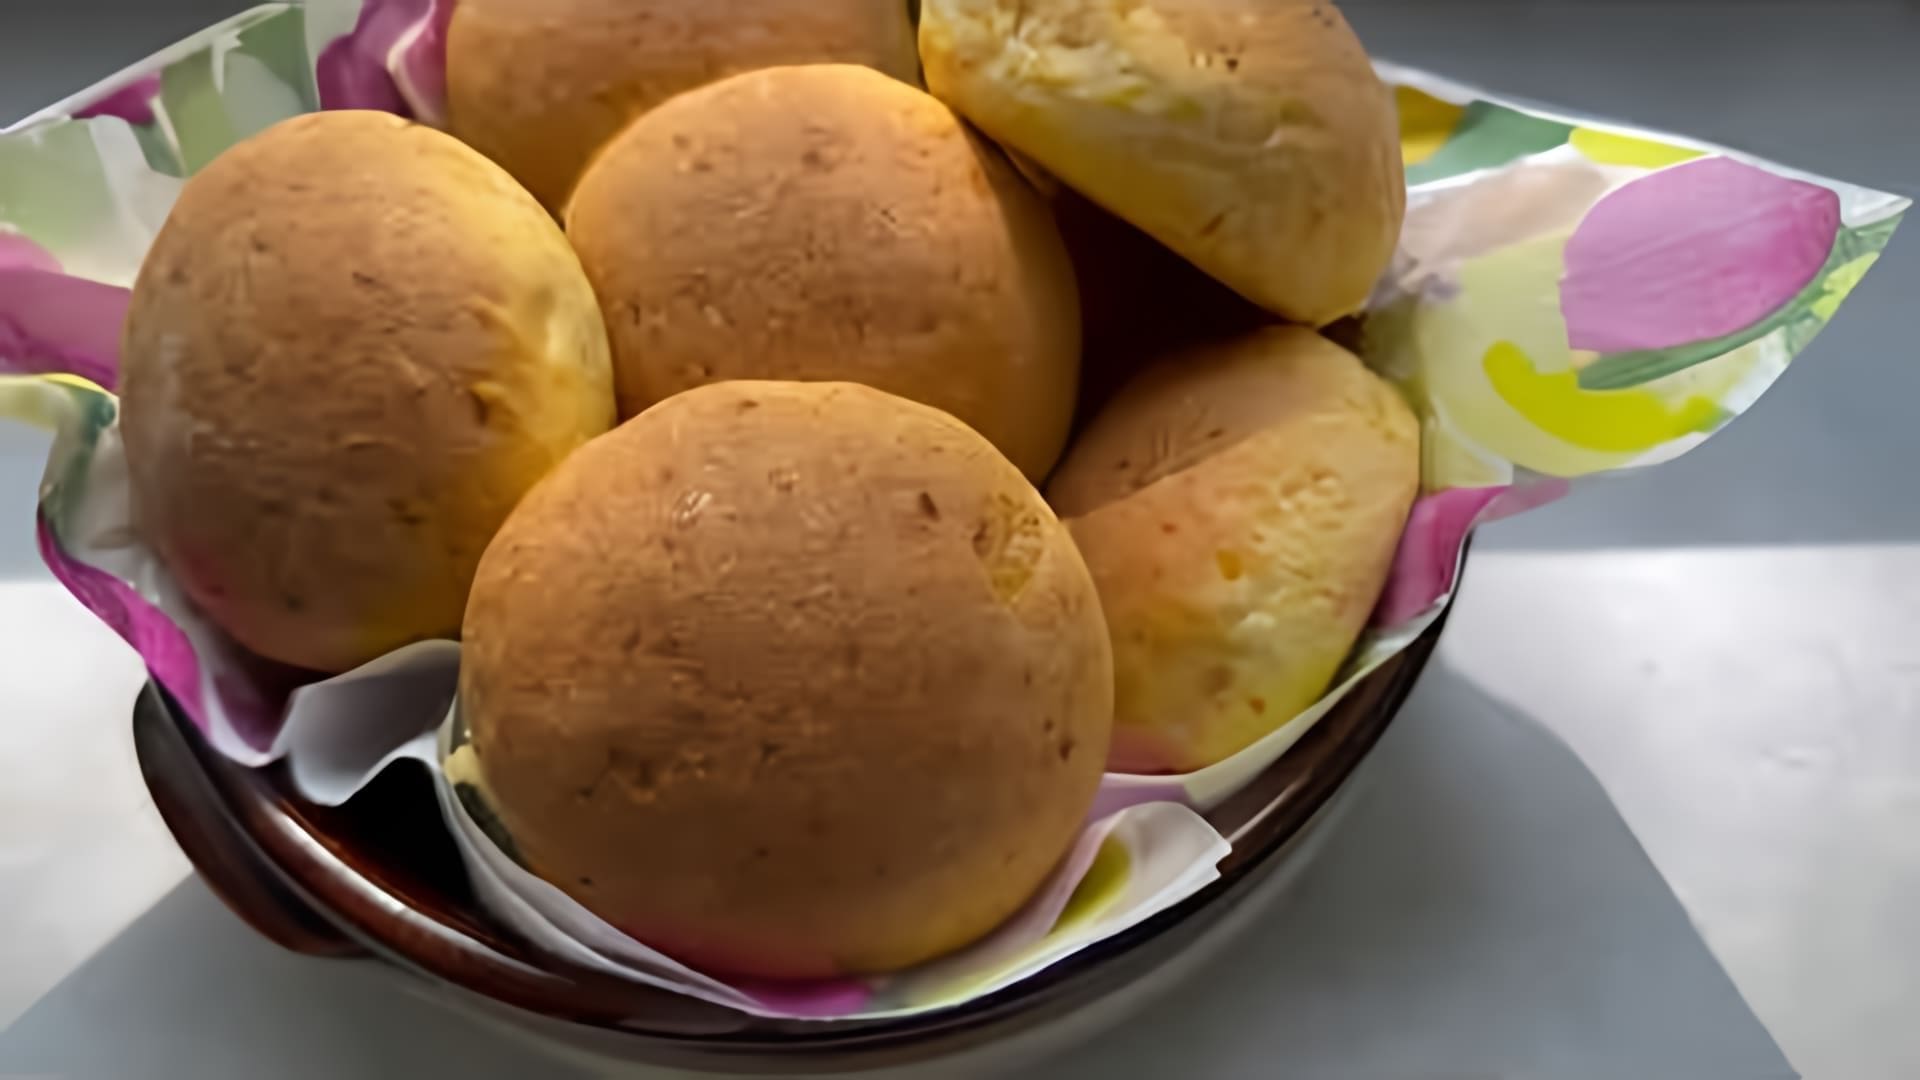 В этом видео демонстрируется процесс приготовления морковного хлеба в виде булочек